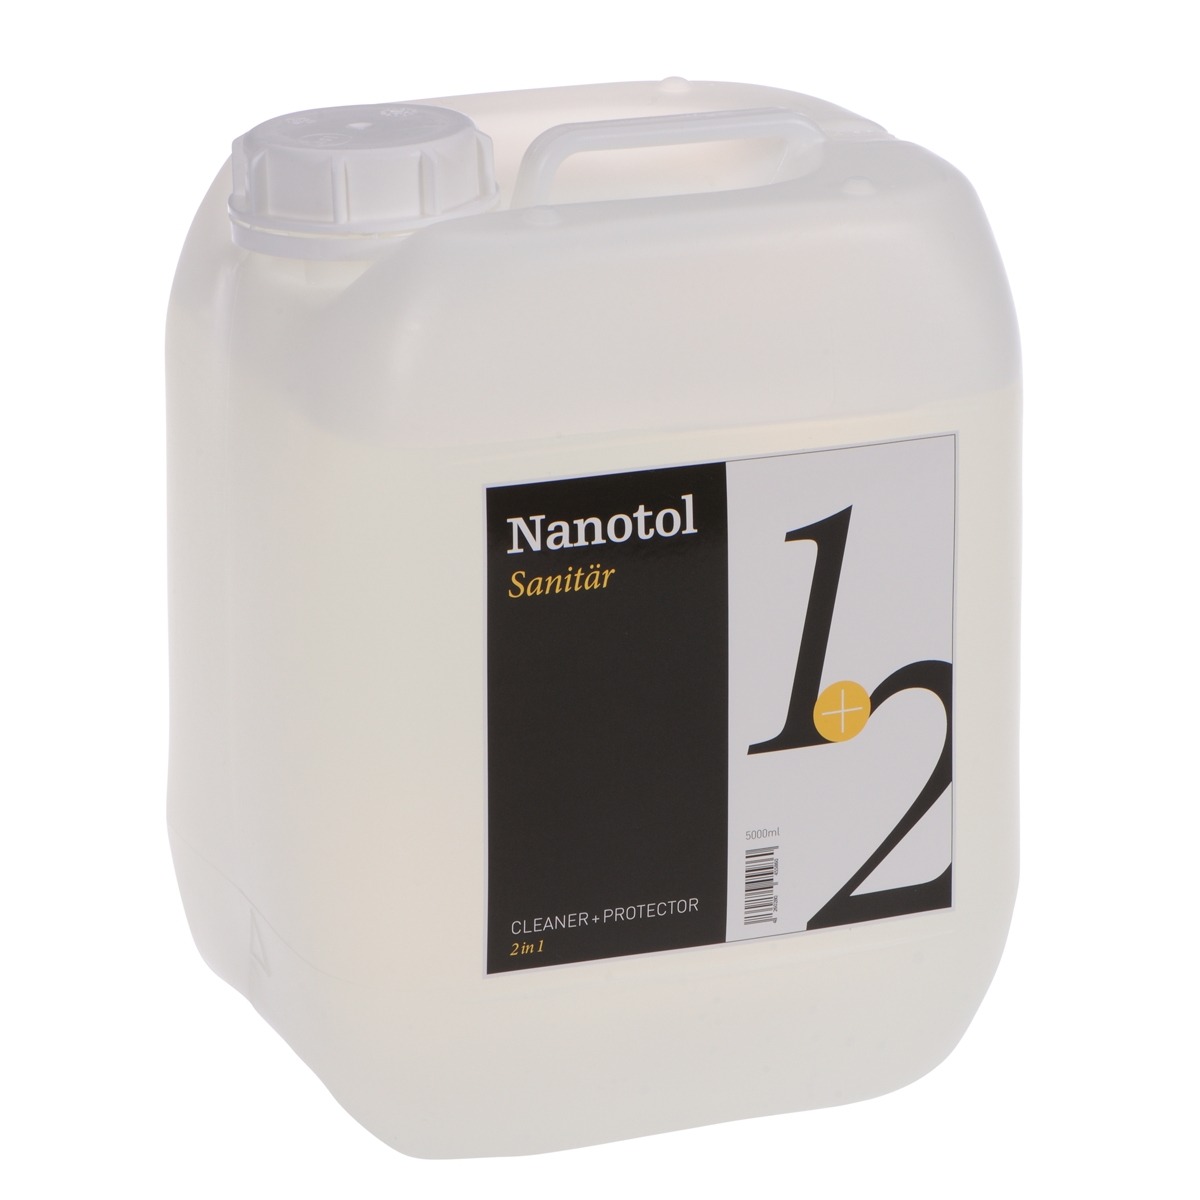 Nanoversiegelung Produktbild von Nanotol Sanitär 2in1 5000 ml - Schnellversiegelung und Auffrischer für 800 qm geeignet für Dusche, Badkeramik, Badfliesen u.v.m.